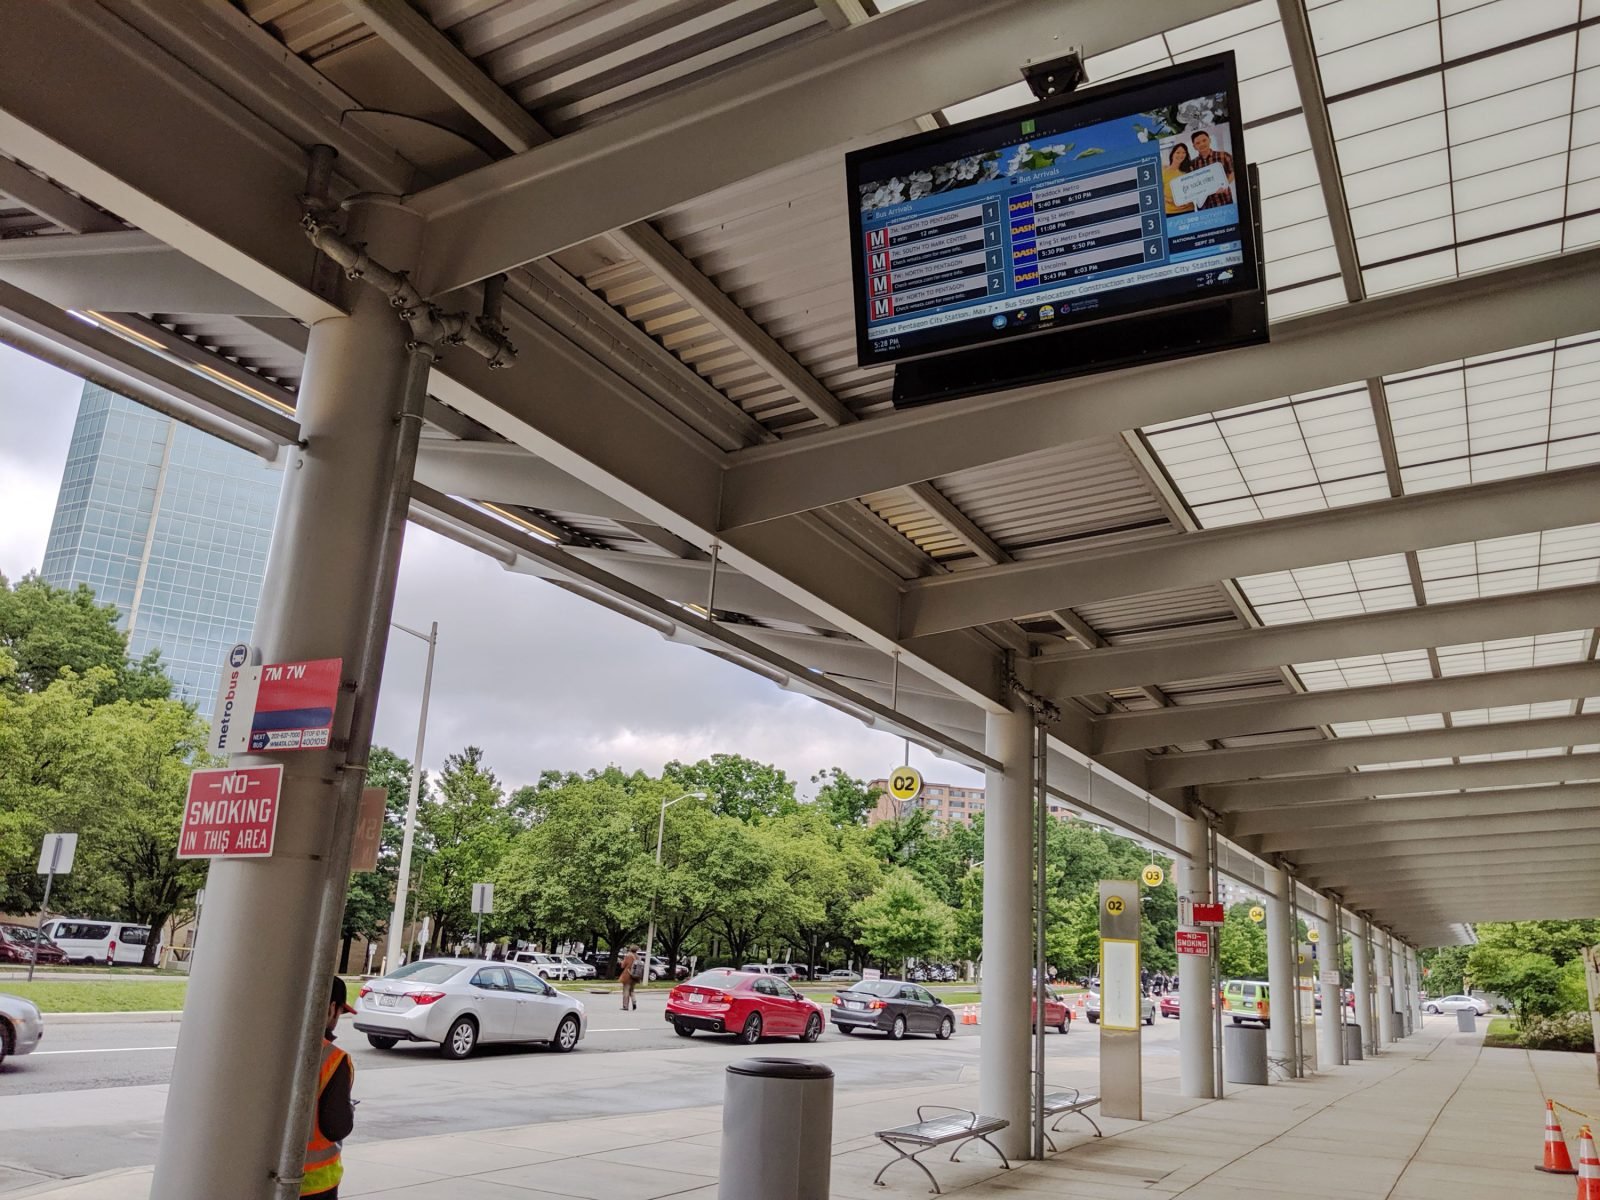 Image of a Transit Display serving DASH buses. 